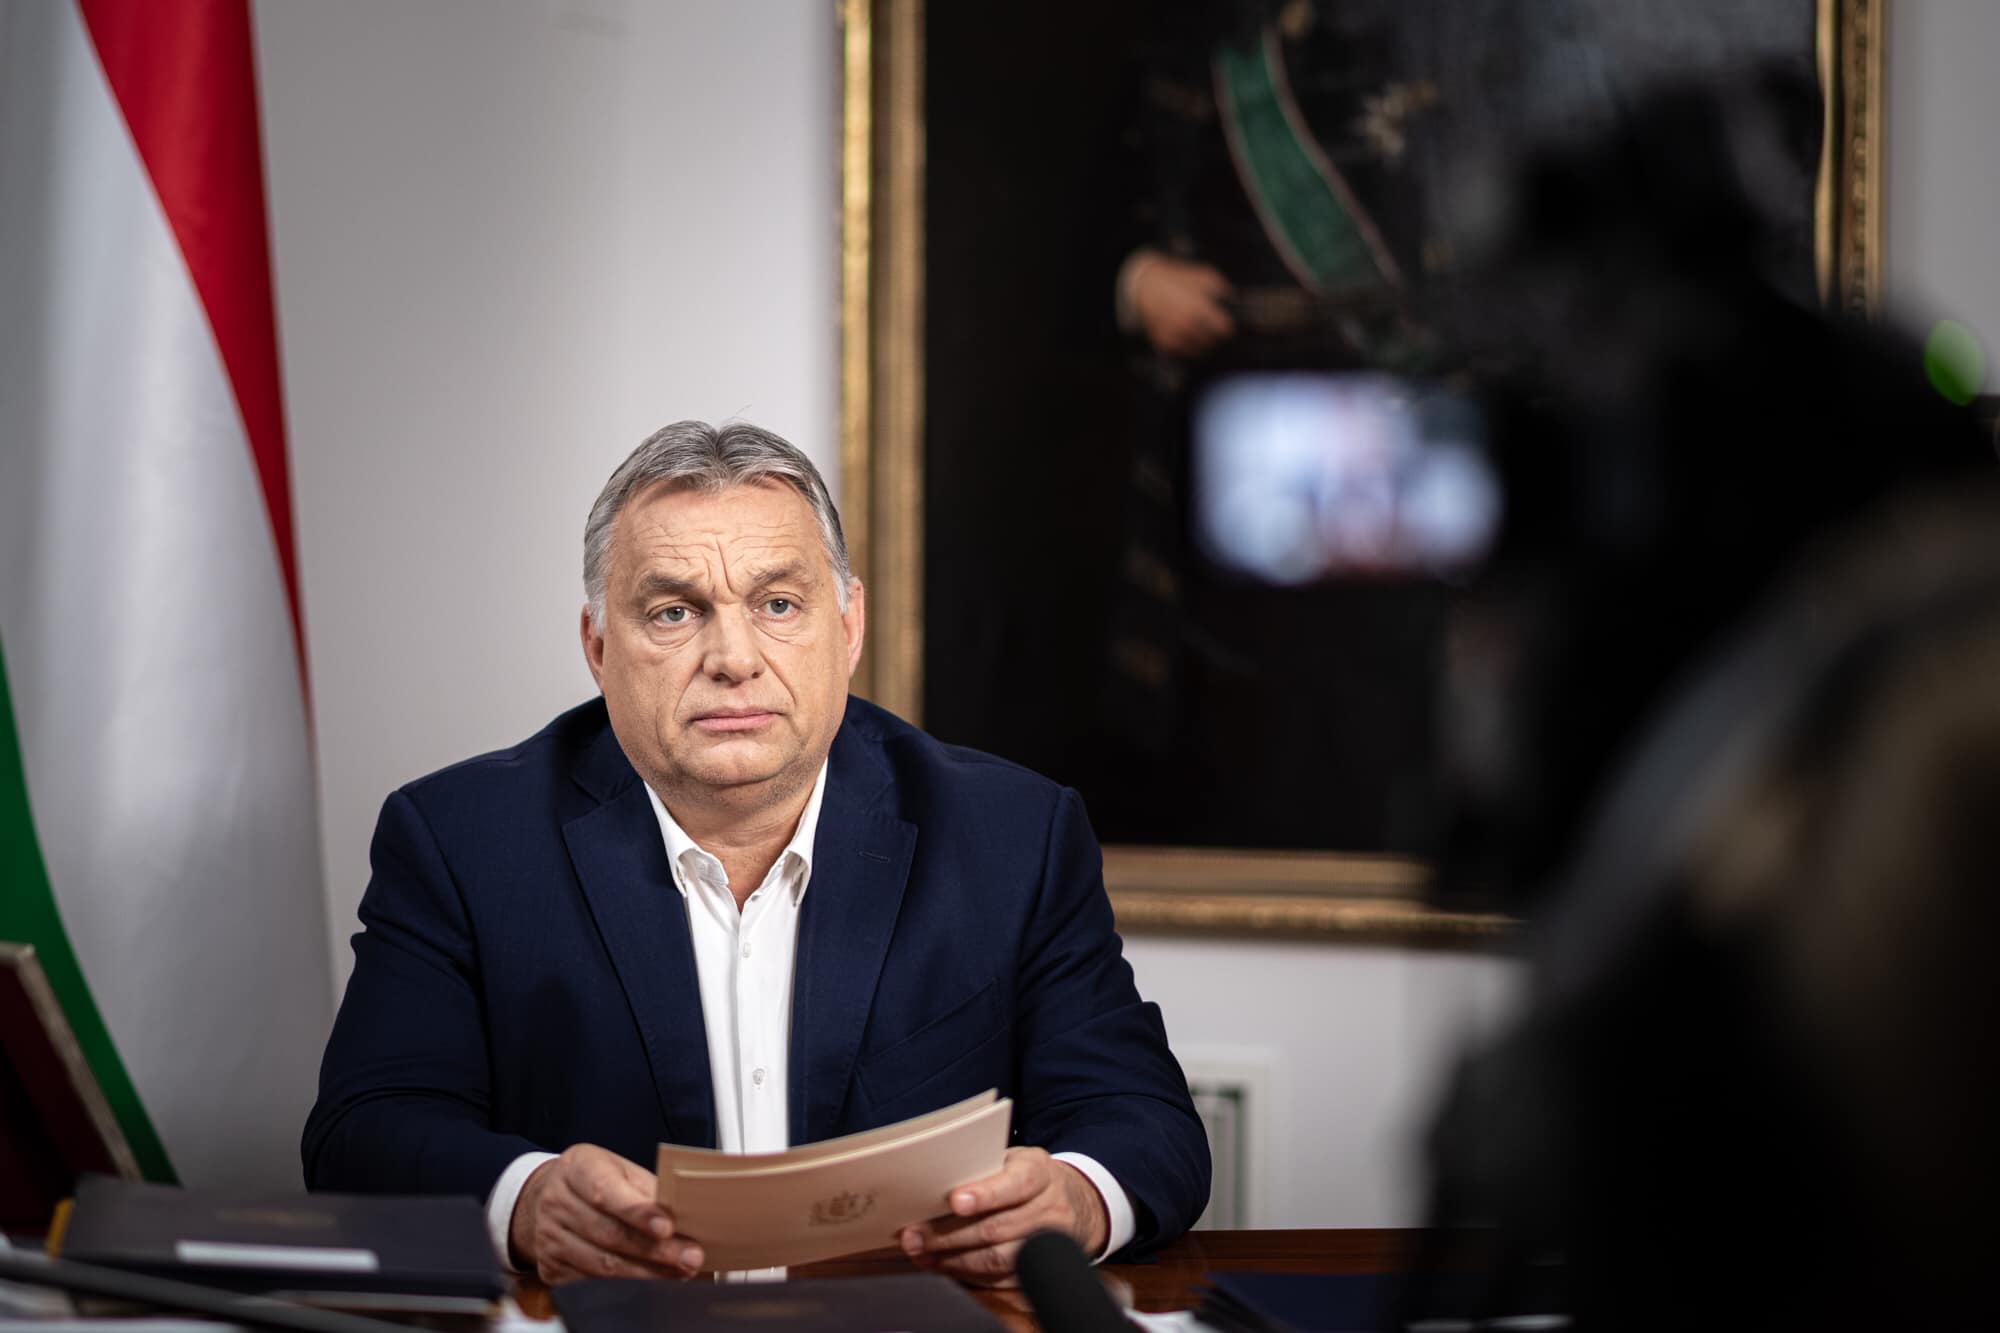 Válasz Online: Kirúgtak egy vezető diplomatát, miután kiderültek Orbán útjának részletei